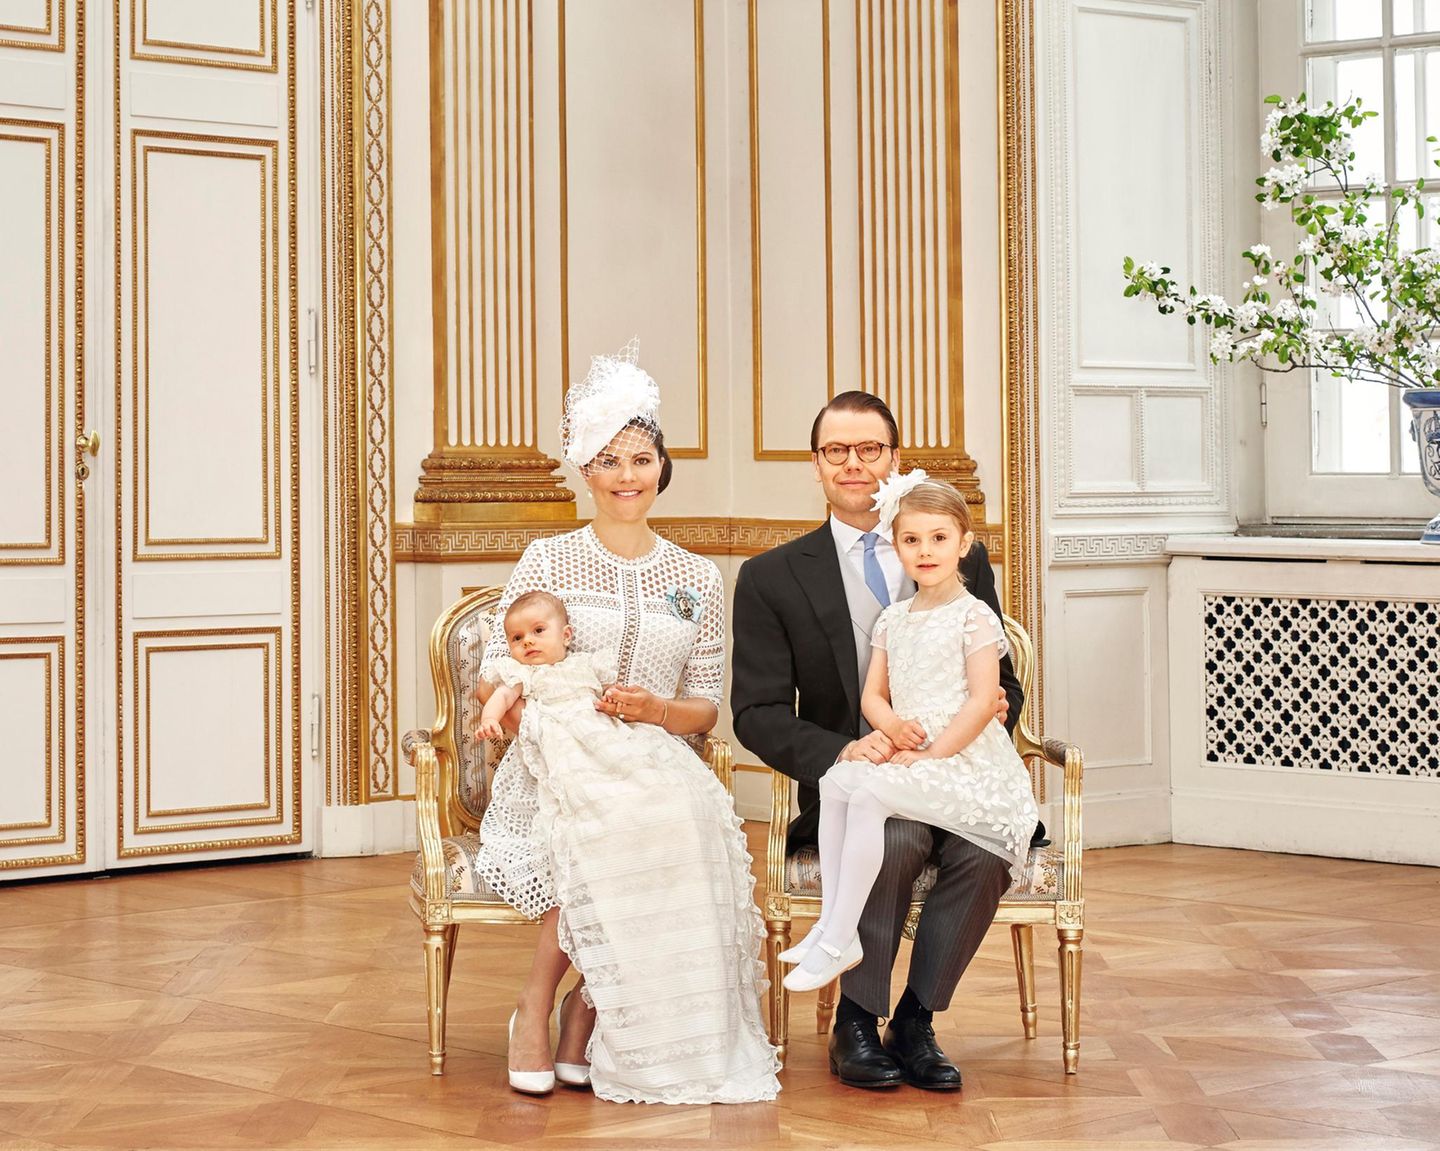 Zwei Tage nach der Taufe gibt es die offiziellen Bilder vom Königshaus, auf denen Prinz Oscar mit seinen Eltern, Prinzessin Victoria und Prinz Daniel, sowie Schwester Estelle zu sehen ist.